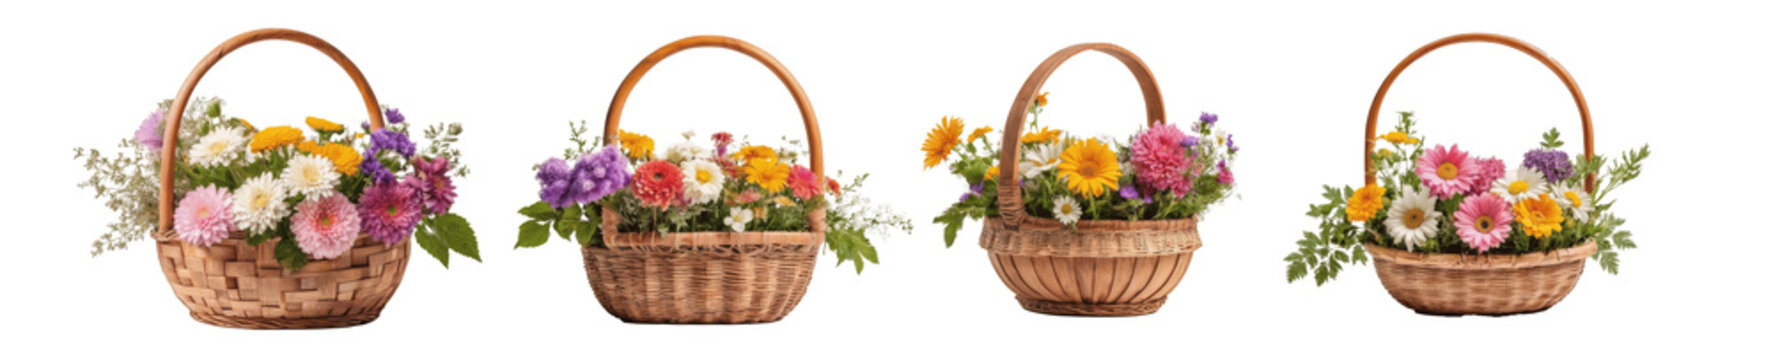 Fototapeta set of flower in baskets